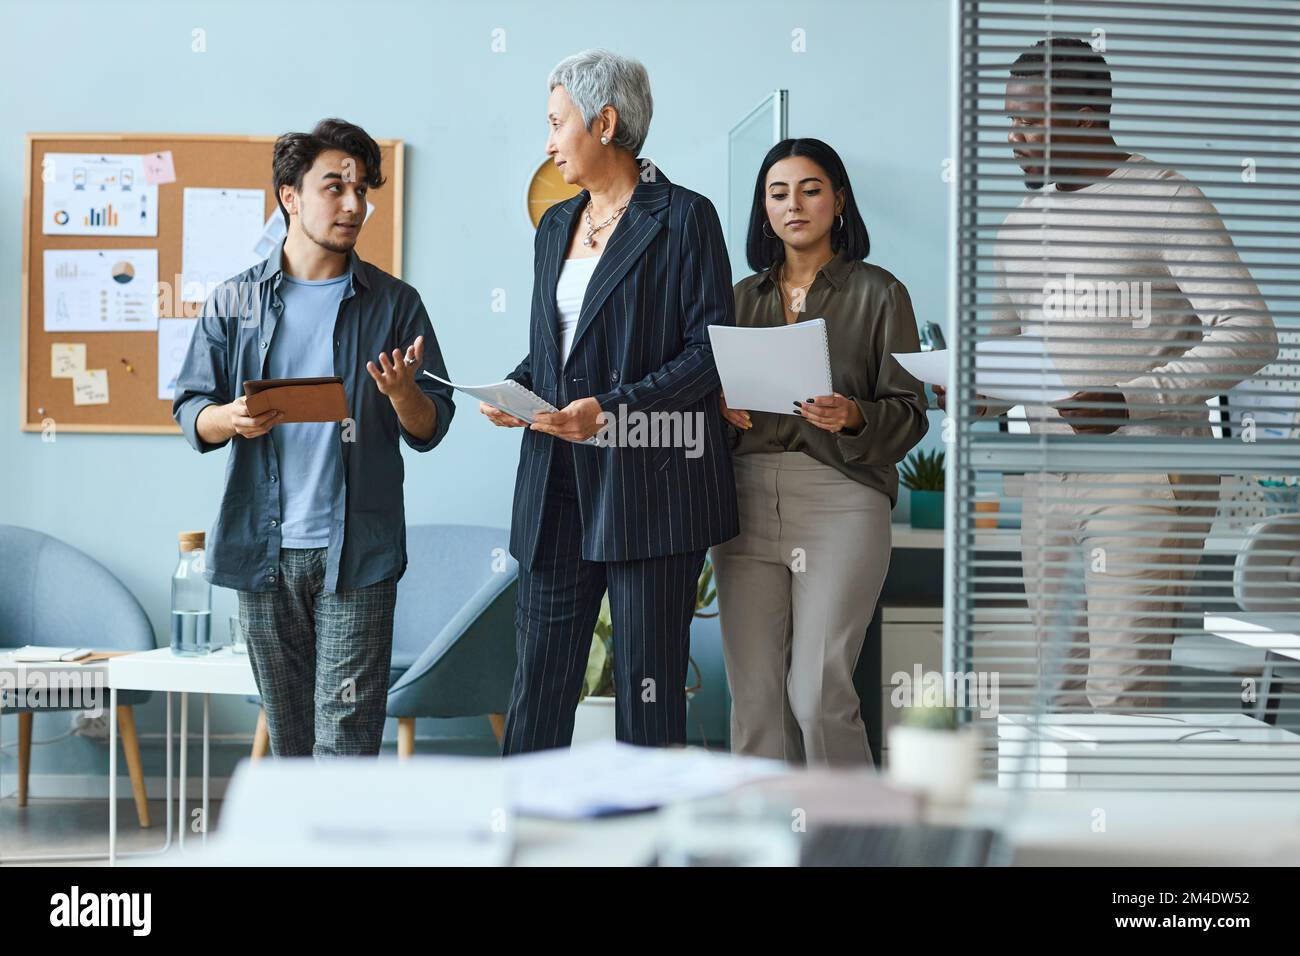 Groupe multiethnique de gens d'affaires avec une femme patron pendant le processus de travail au bureau Banque D'Images